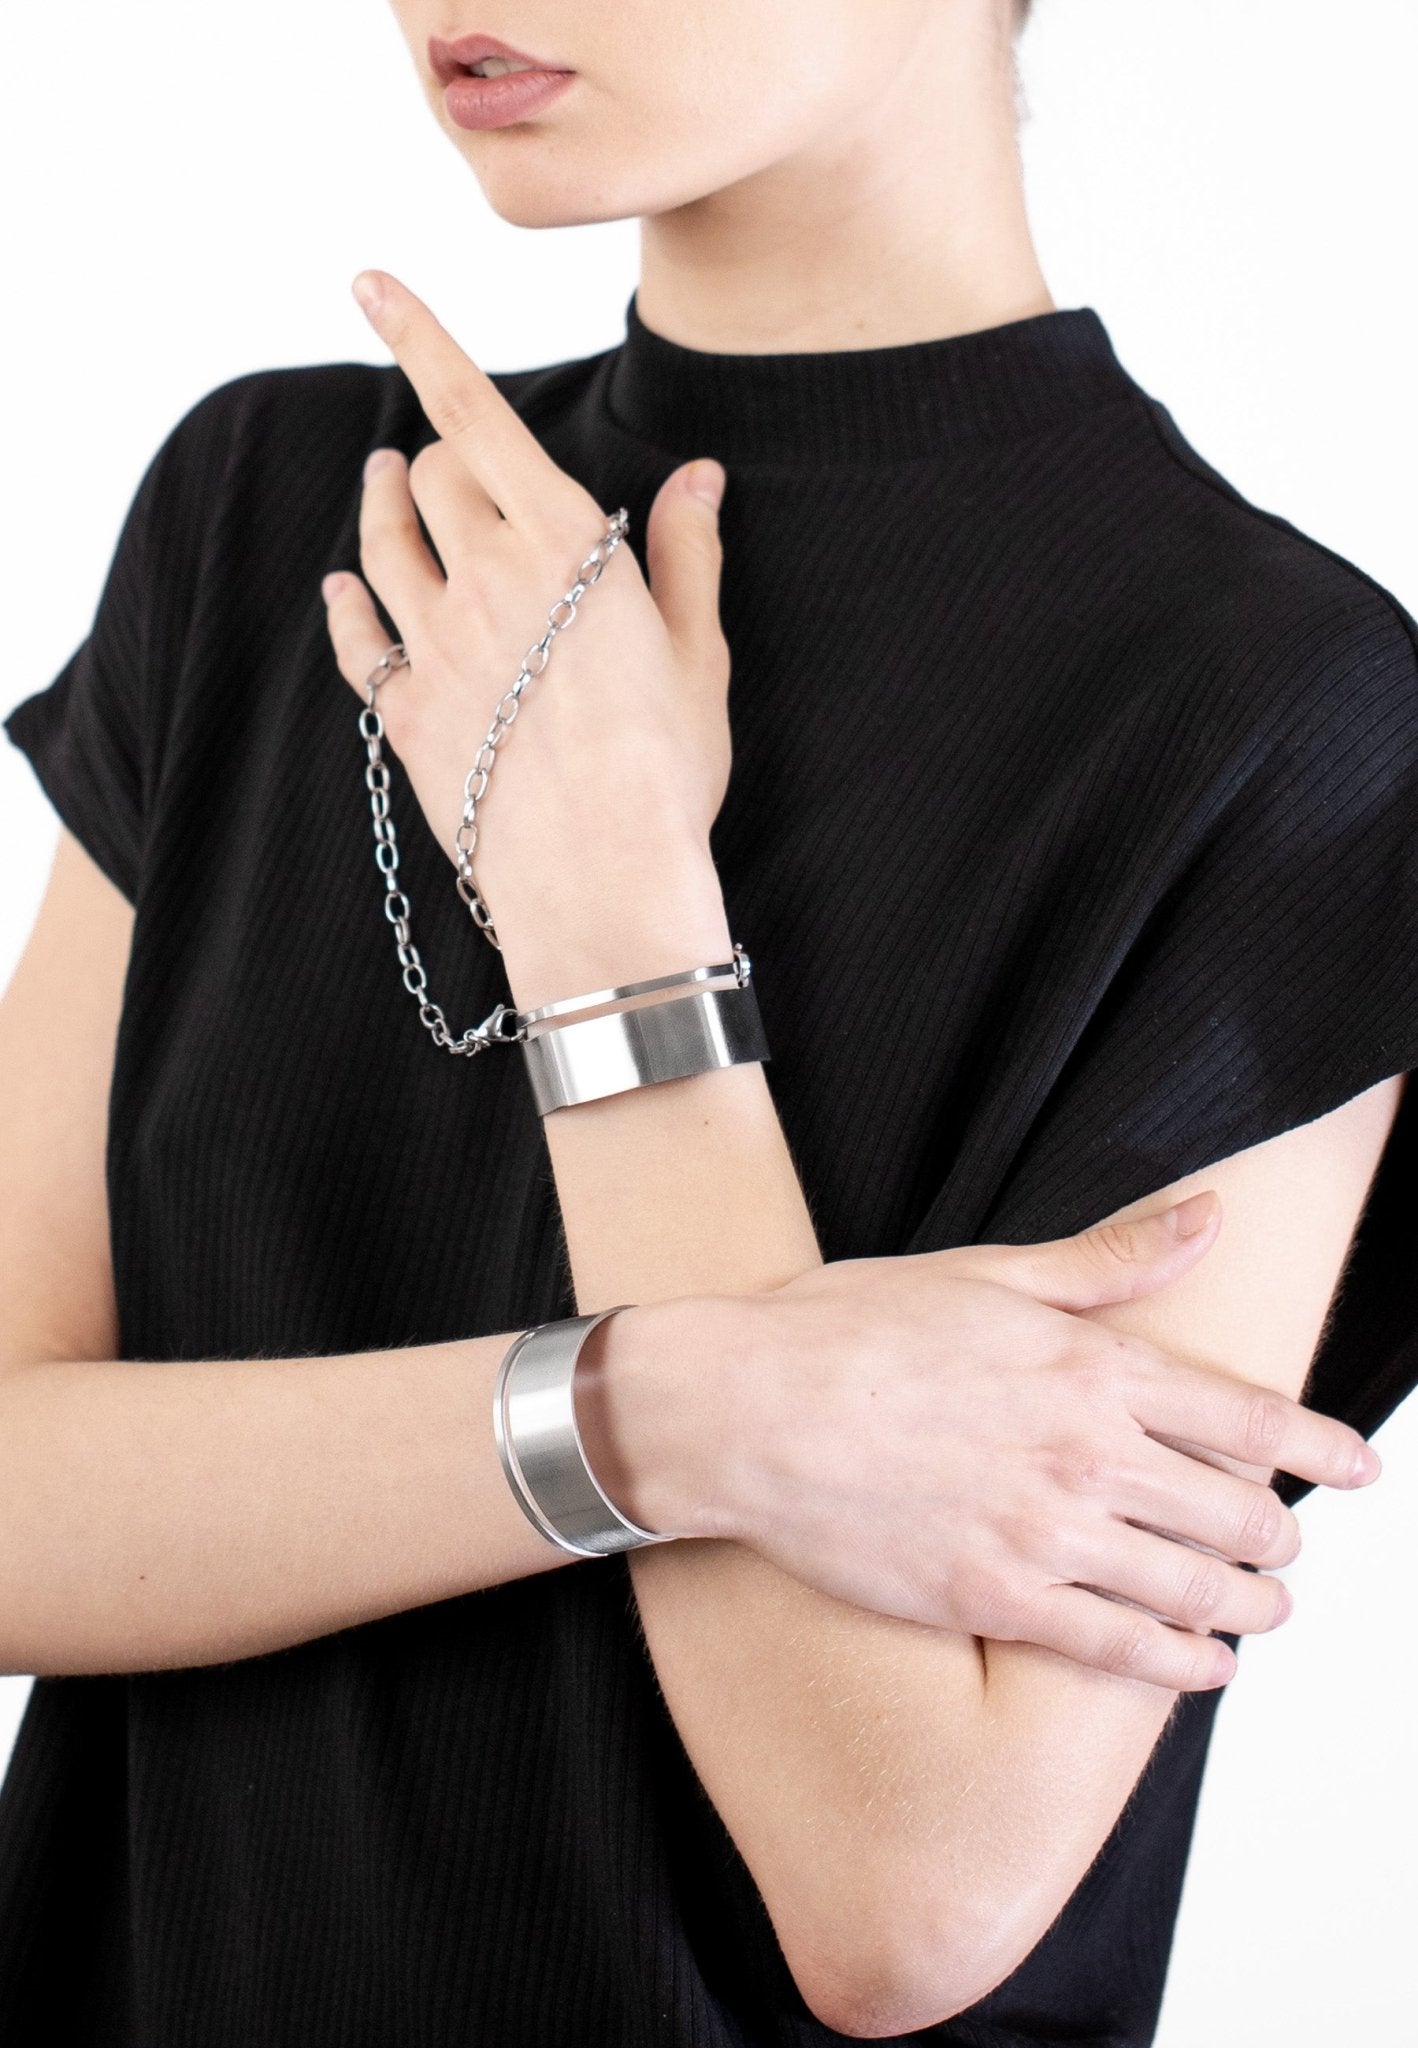 Open Cuff Bracelet Set with Chain "Handcuff Bracelets" - MYL BERLIN - 4260654110265 - 4260654110265